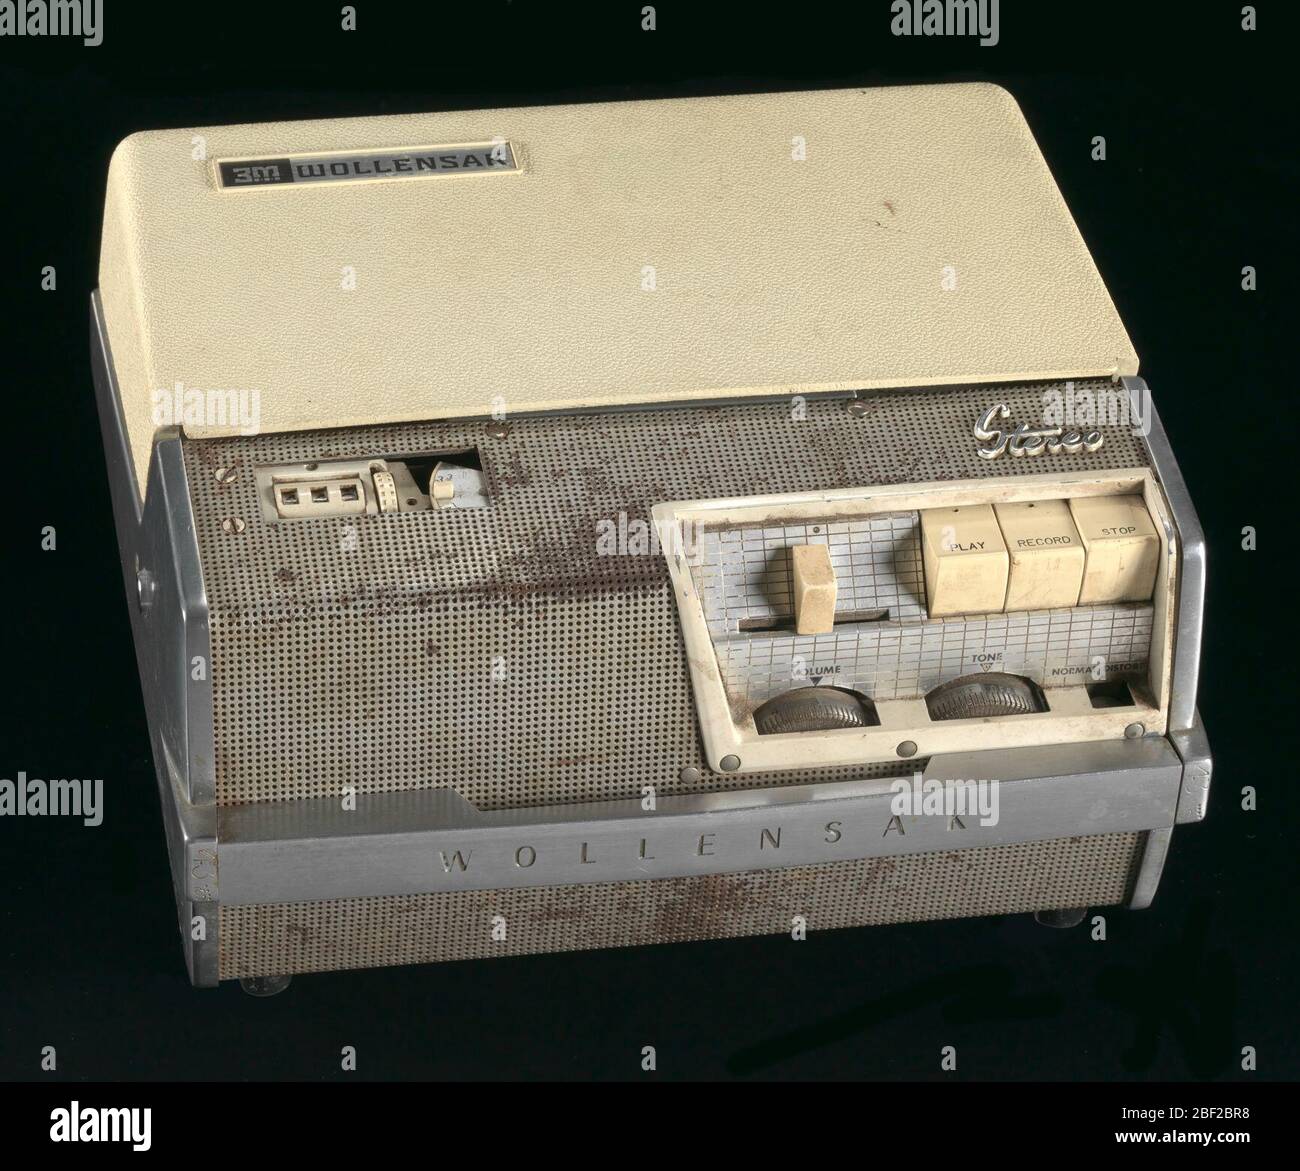 Tonbandgerät, das von Malcolm X in Moschee 7 verwendet wurde. Wollensak  Magnetrecorder mit Stereo-Band, Modell T-1515. Beiger Kunststoff mit  silbernem Metall. Die Vorderseite des Recorders verfügt über mehrere  beigefarbene Tasten zum Abspielen,